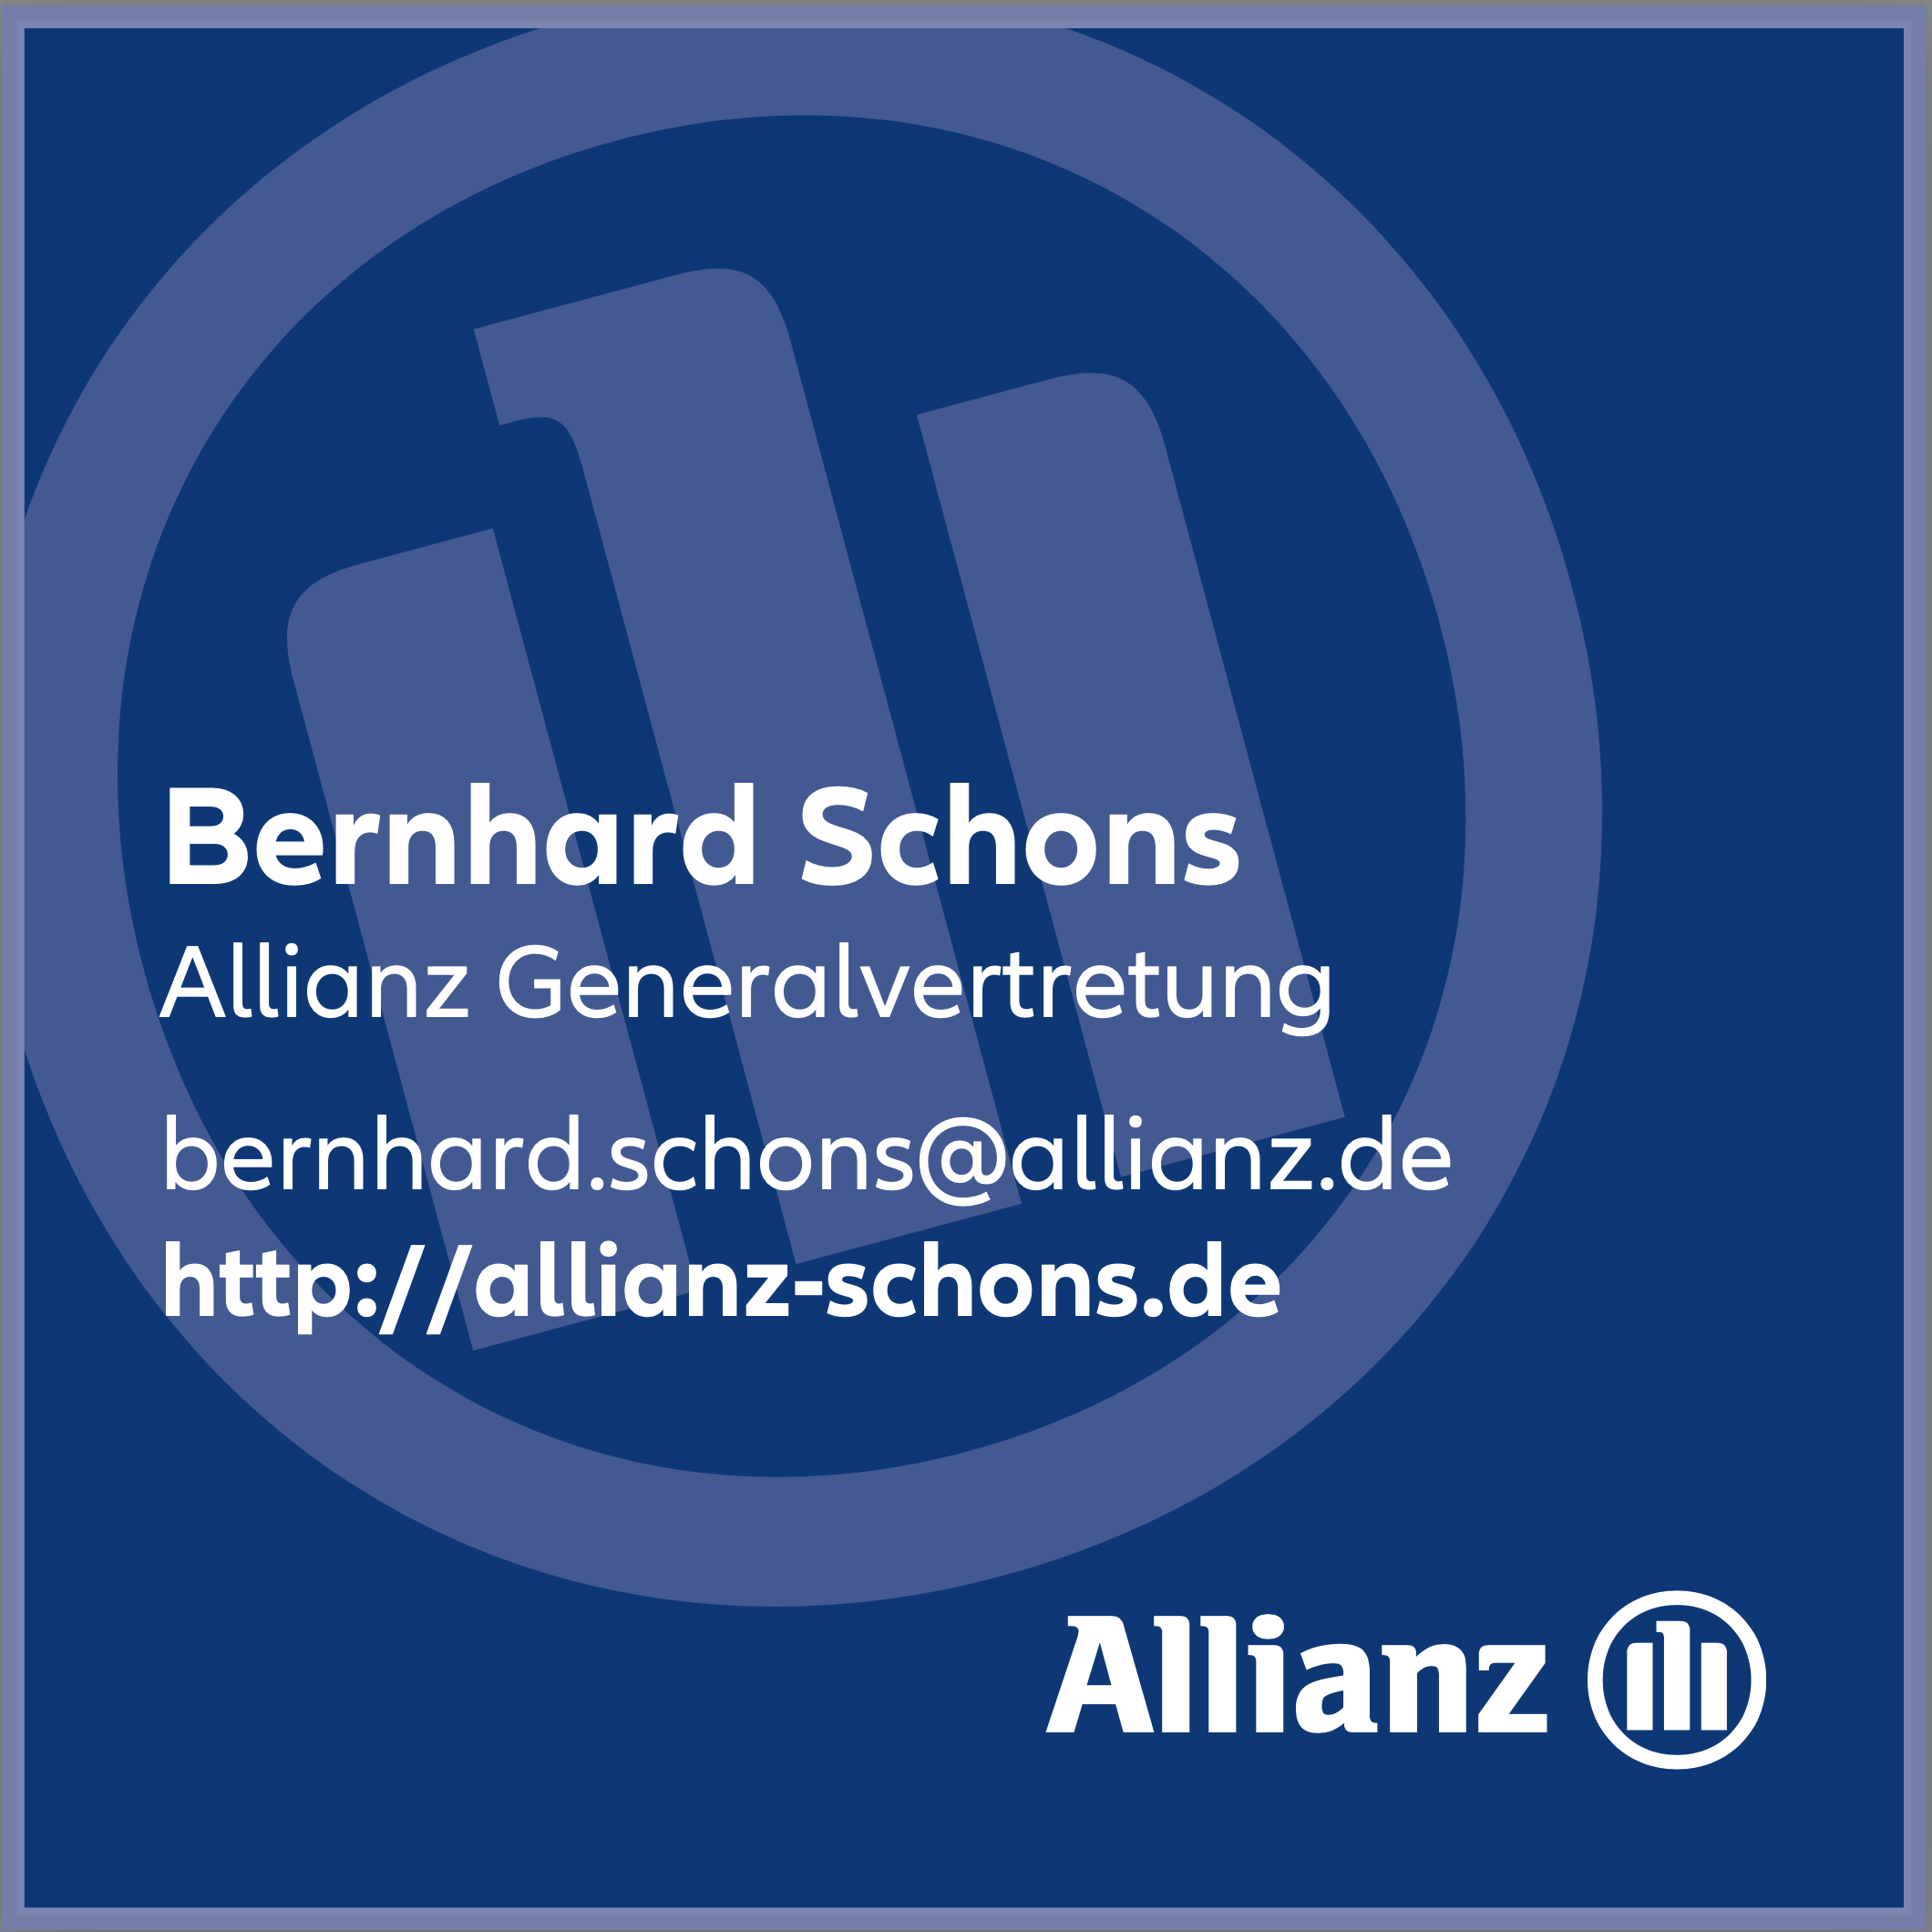 Allianz Generalvertretung Bernhard Schons – Homepage besuchen ›››